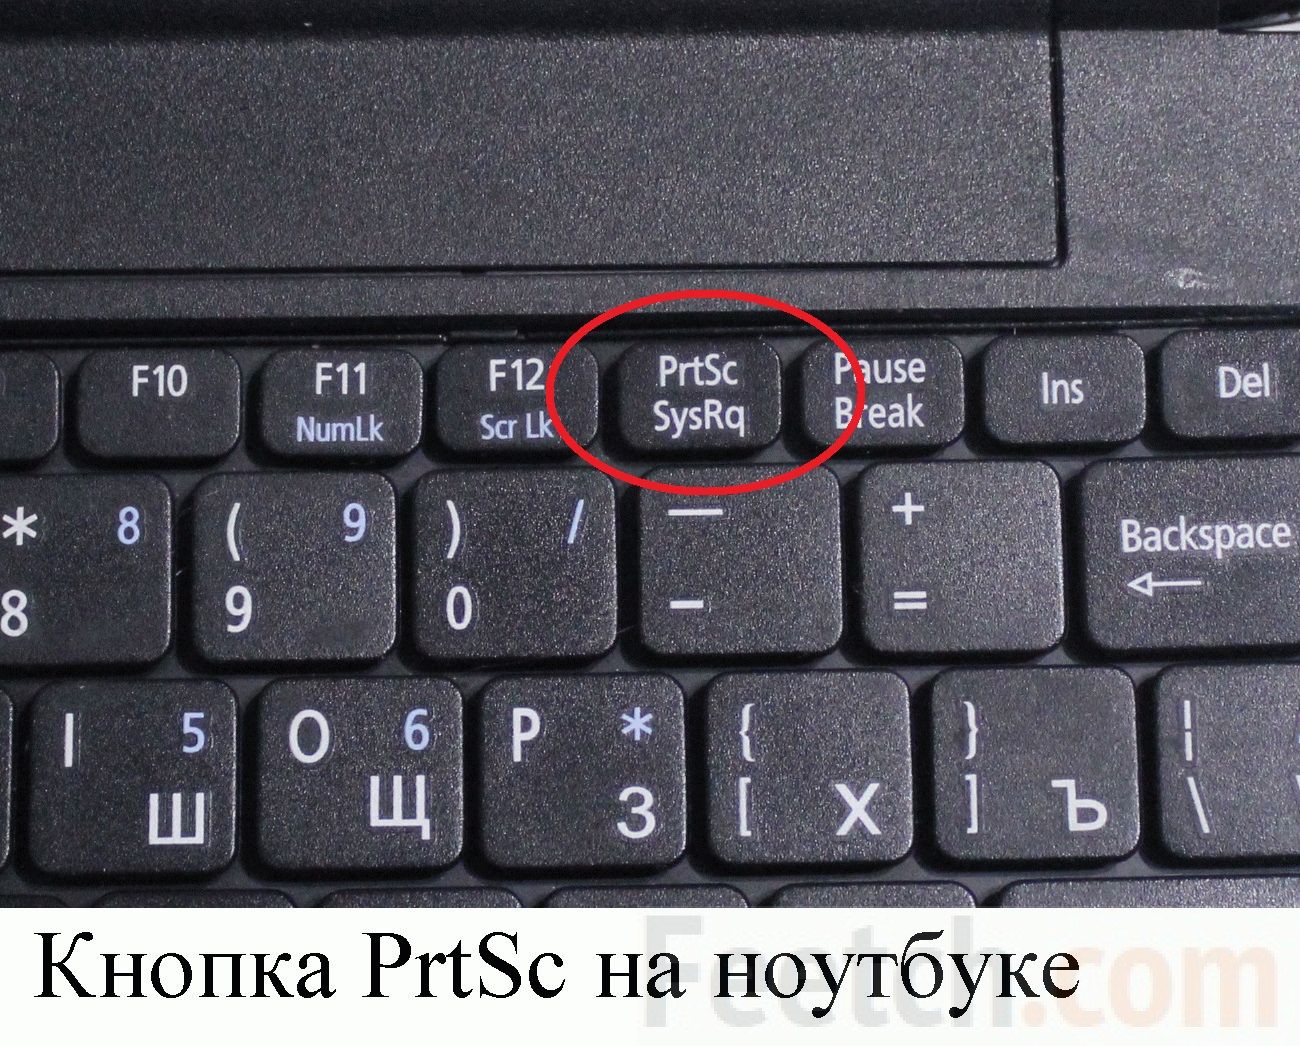 Кнопки на клавиатуре для снятия скриншота